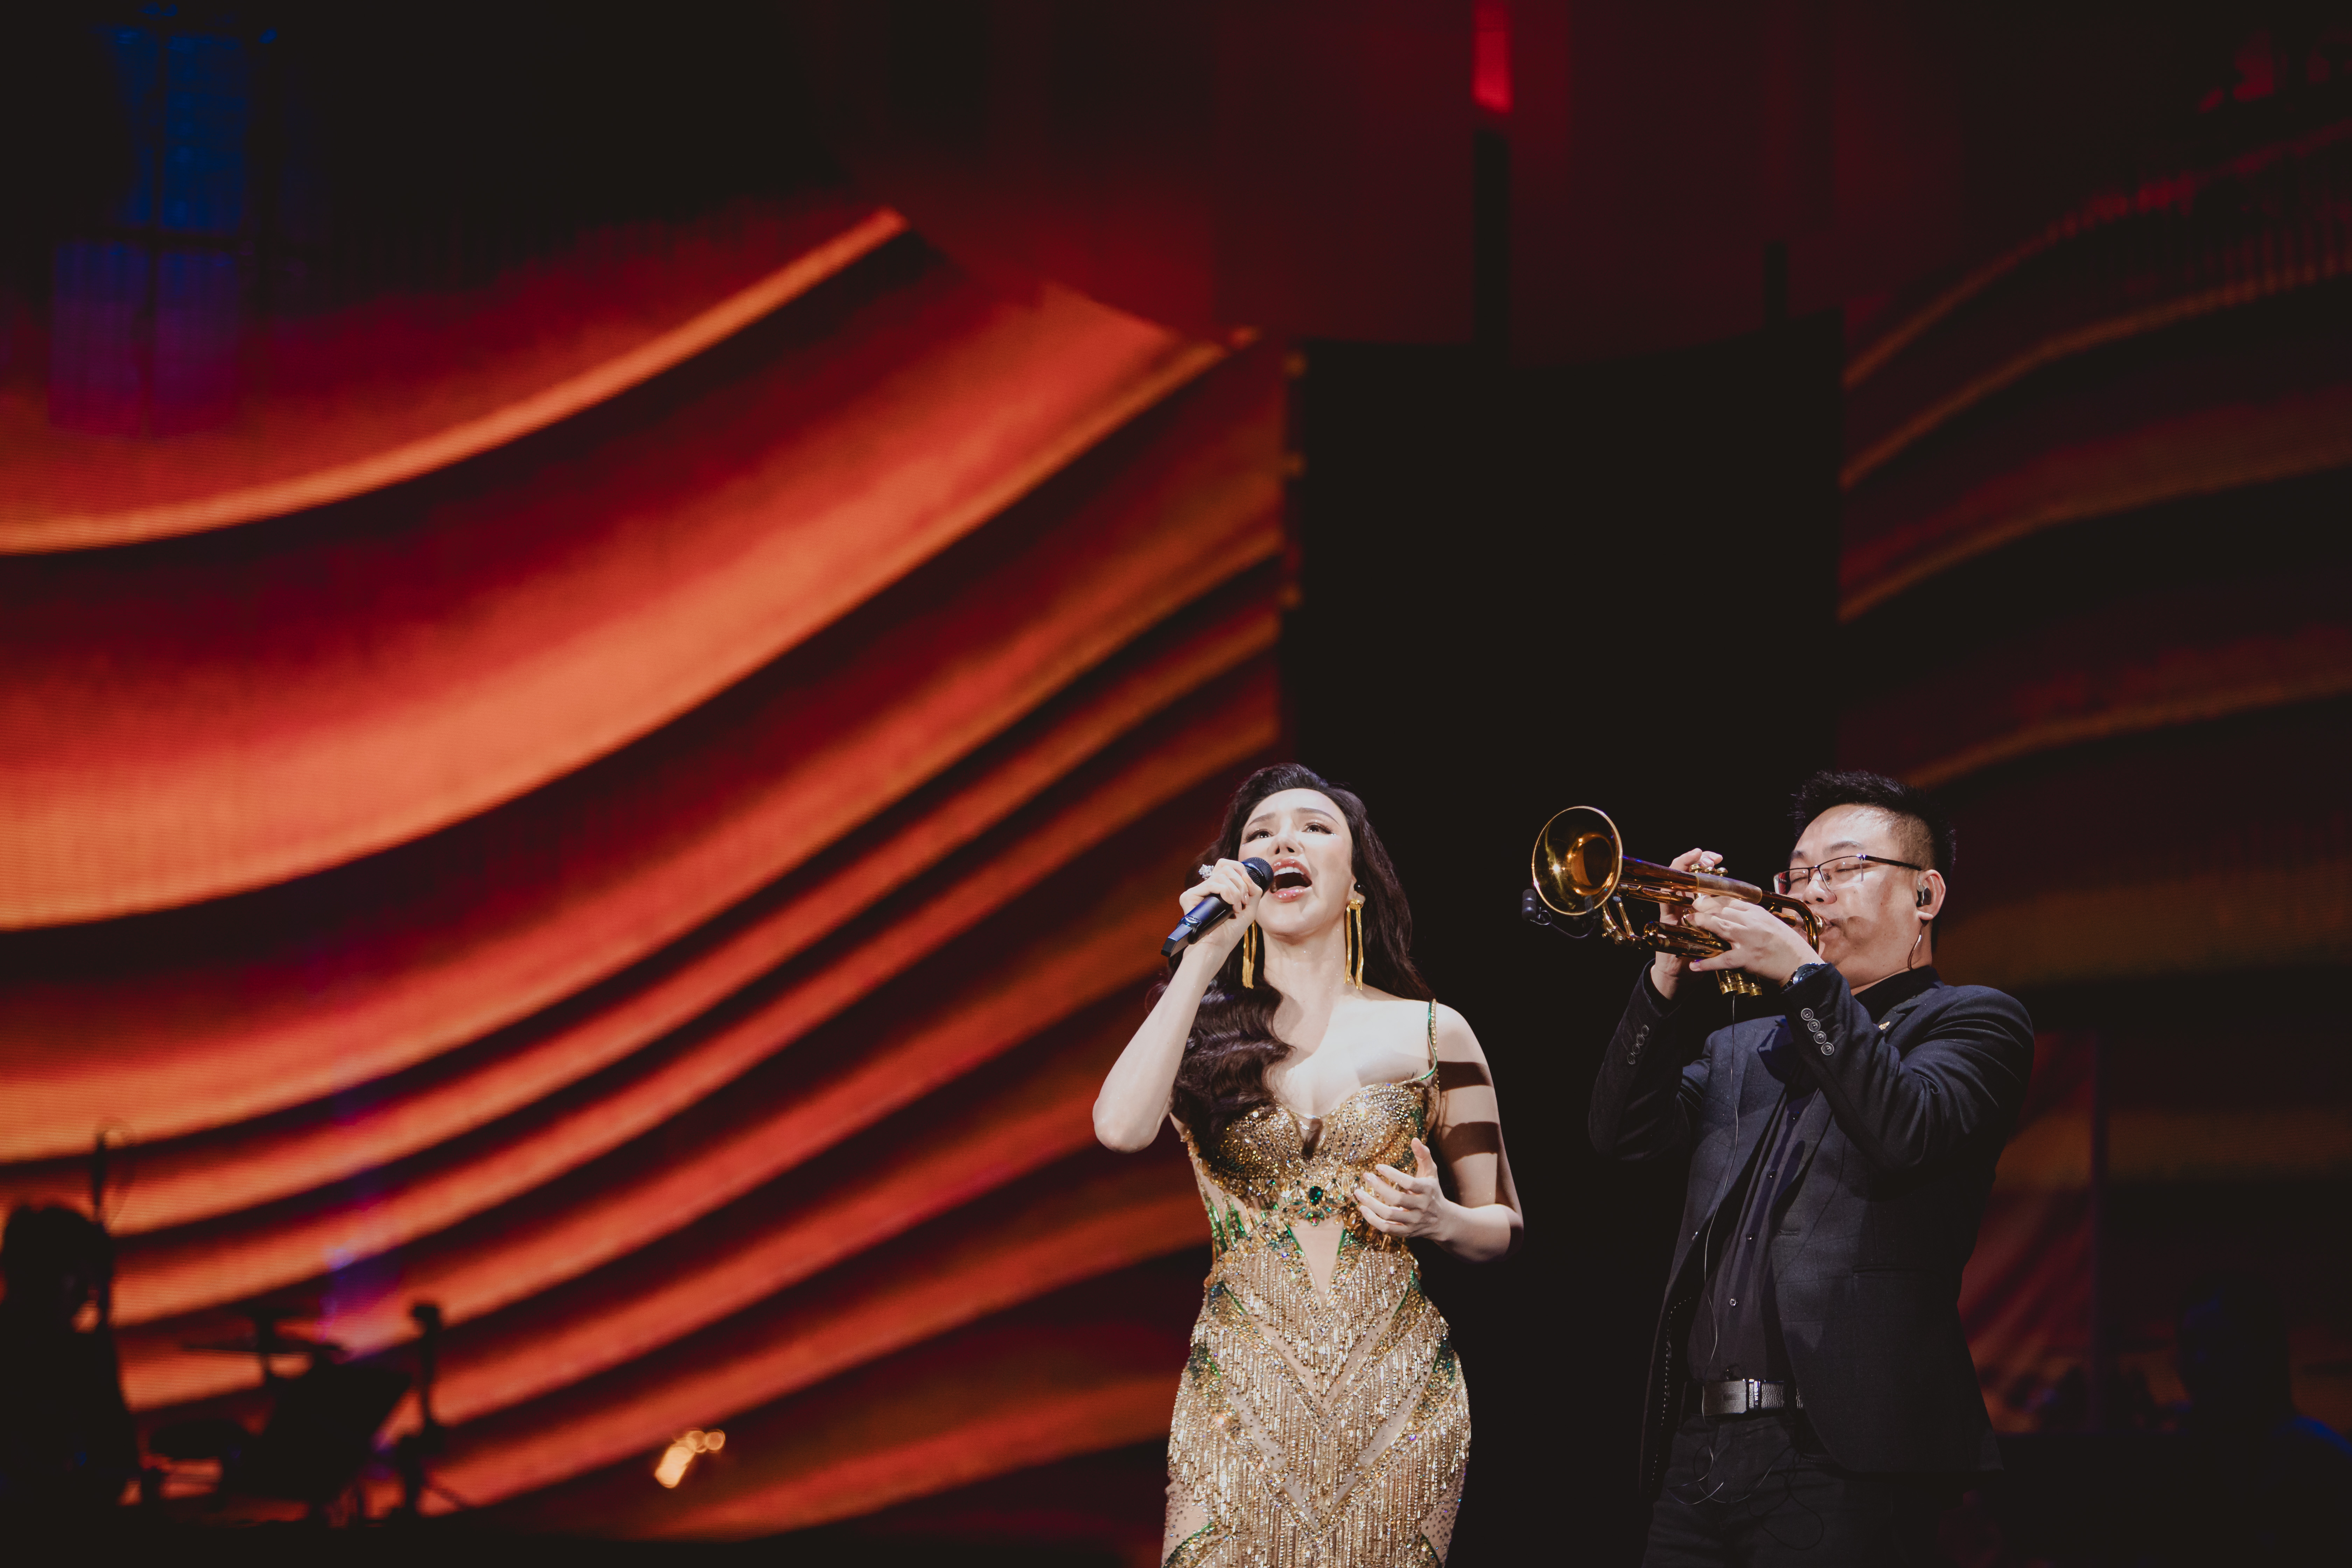 Sau 10 năm tạm nghỉ, ca sĩ Hồ Quỳnh Hương trở lại với đêm nhạc của Đỗ Bảo trong loạt ca khúc “Bức thư tình“. Ảnh: BTC